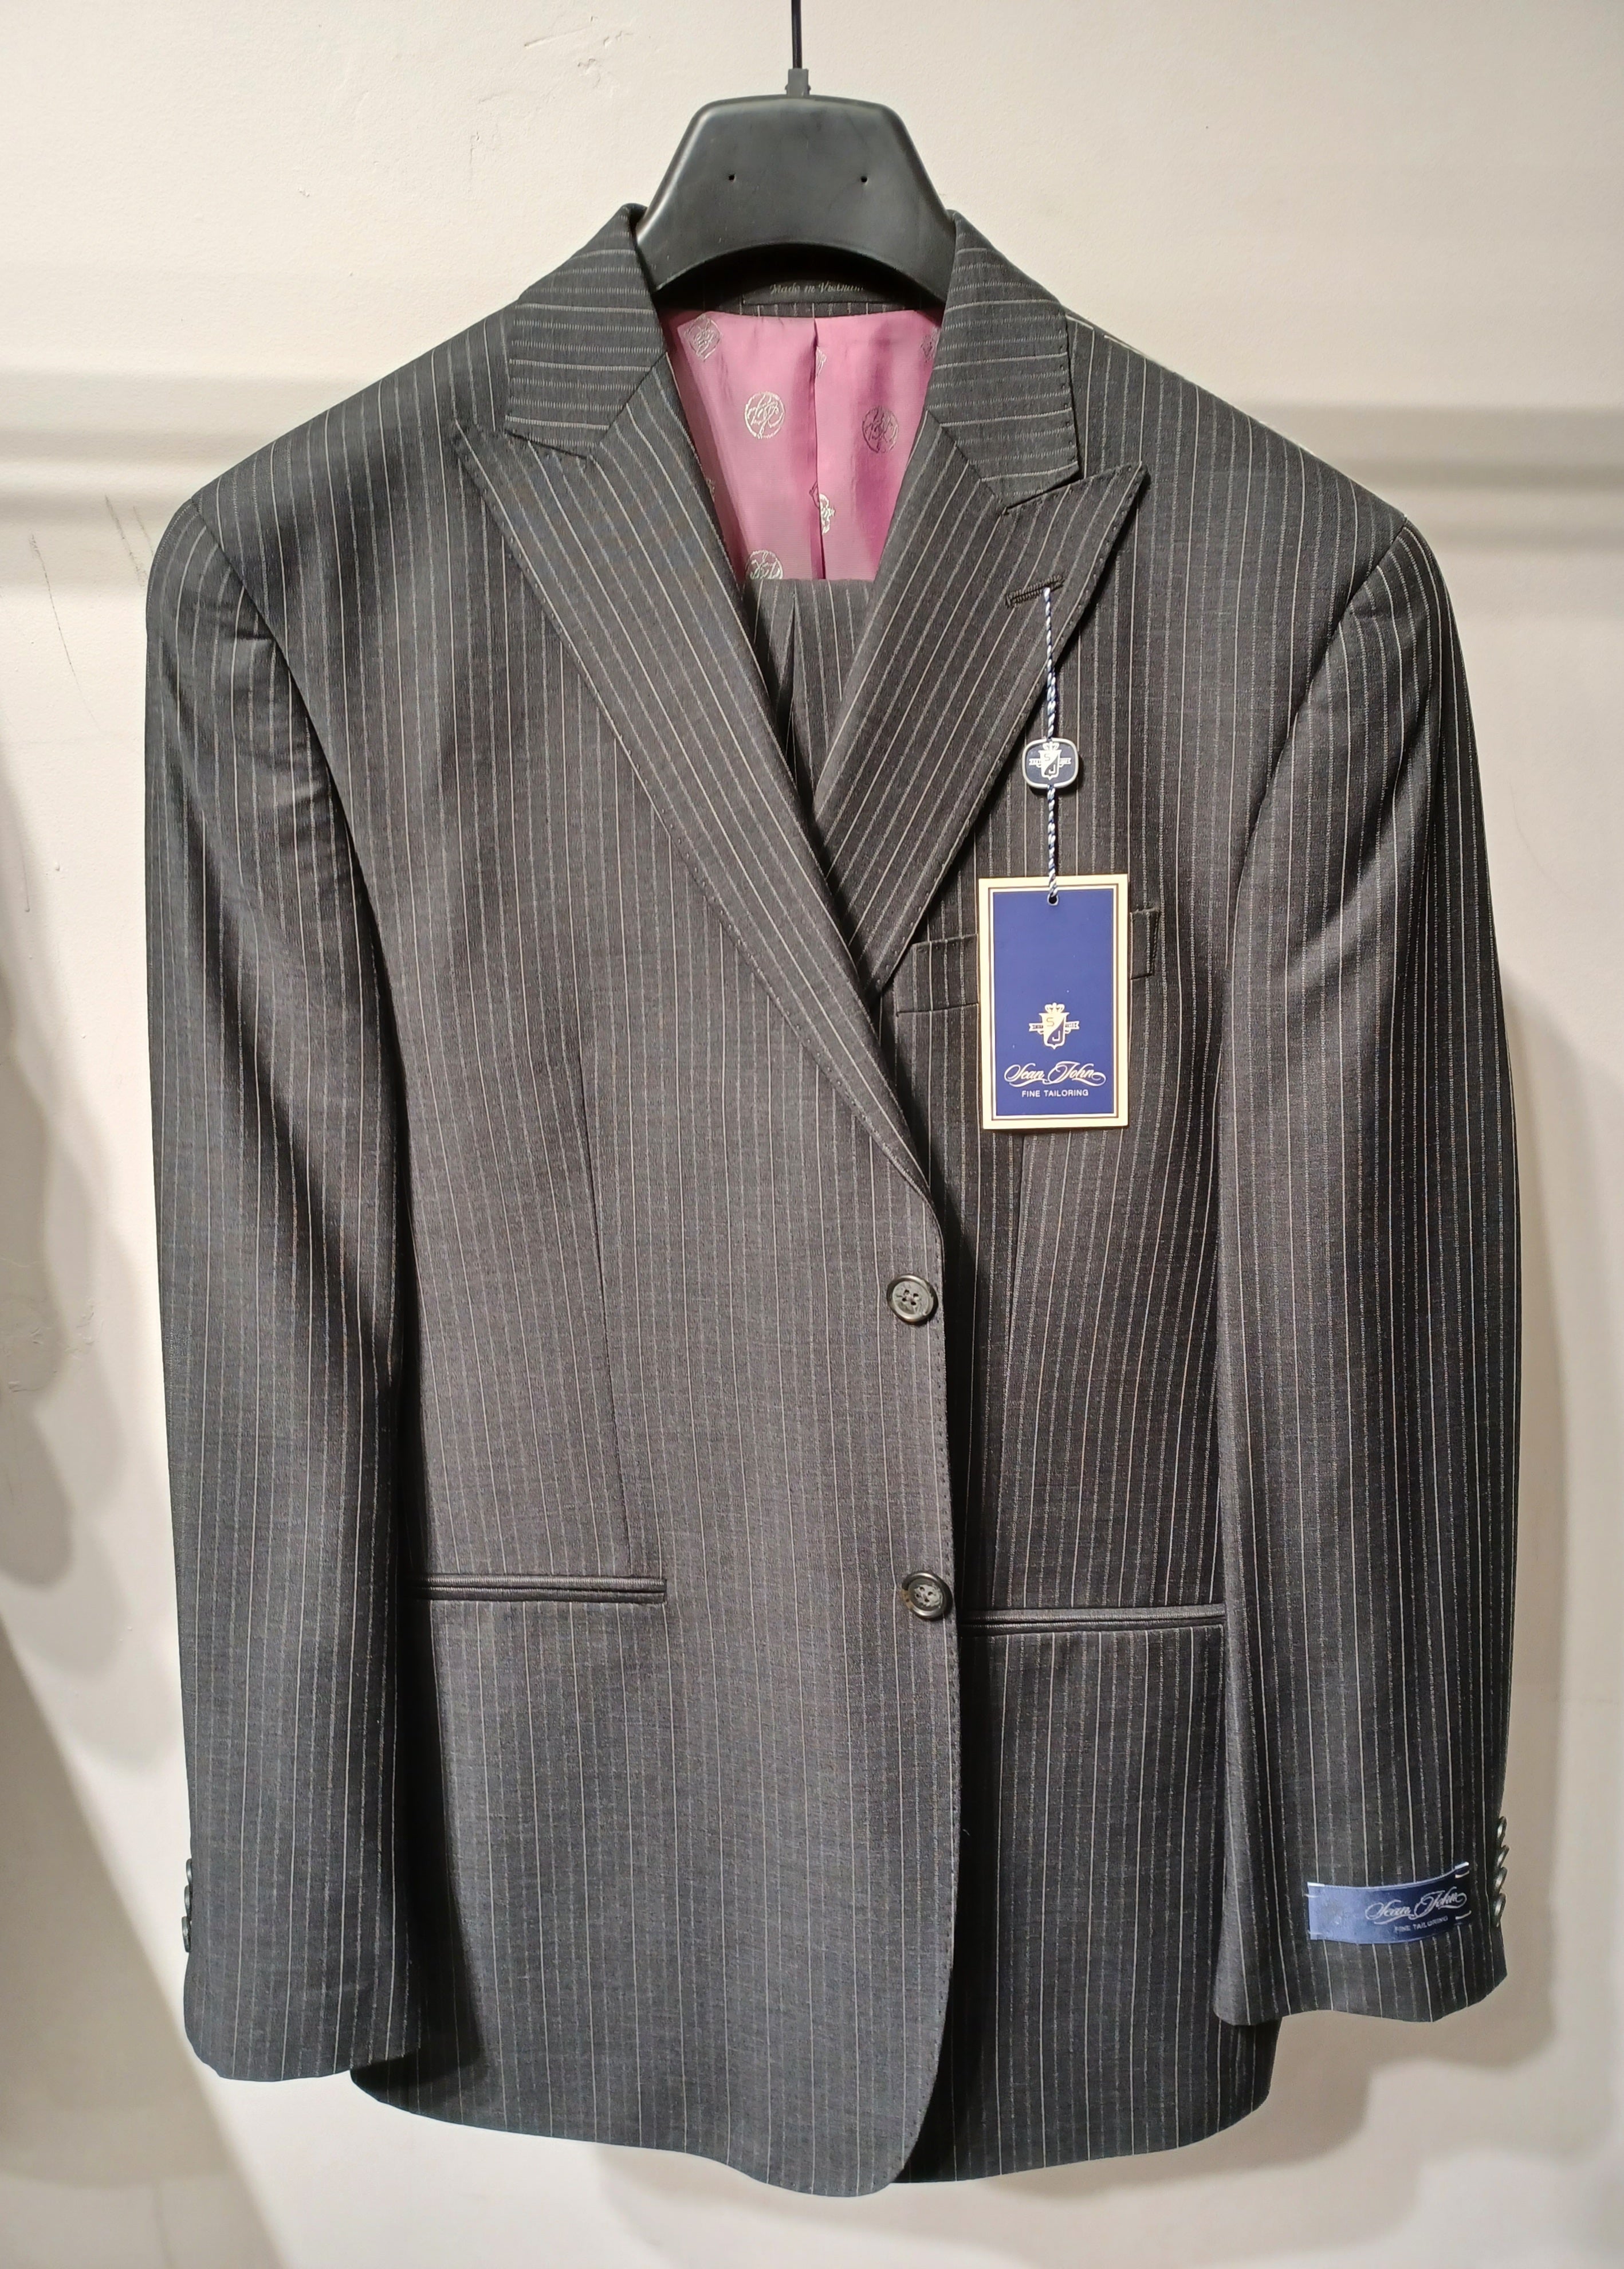 SEAN JOHN 2pc Regular Fit Suit #152 ONLY SIZE 40R, 48R, 44L (FINAL SALE)